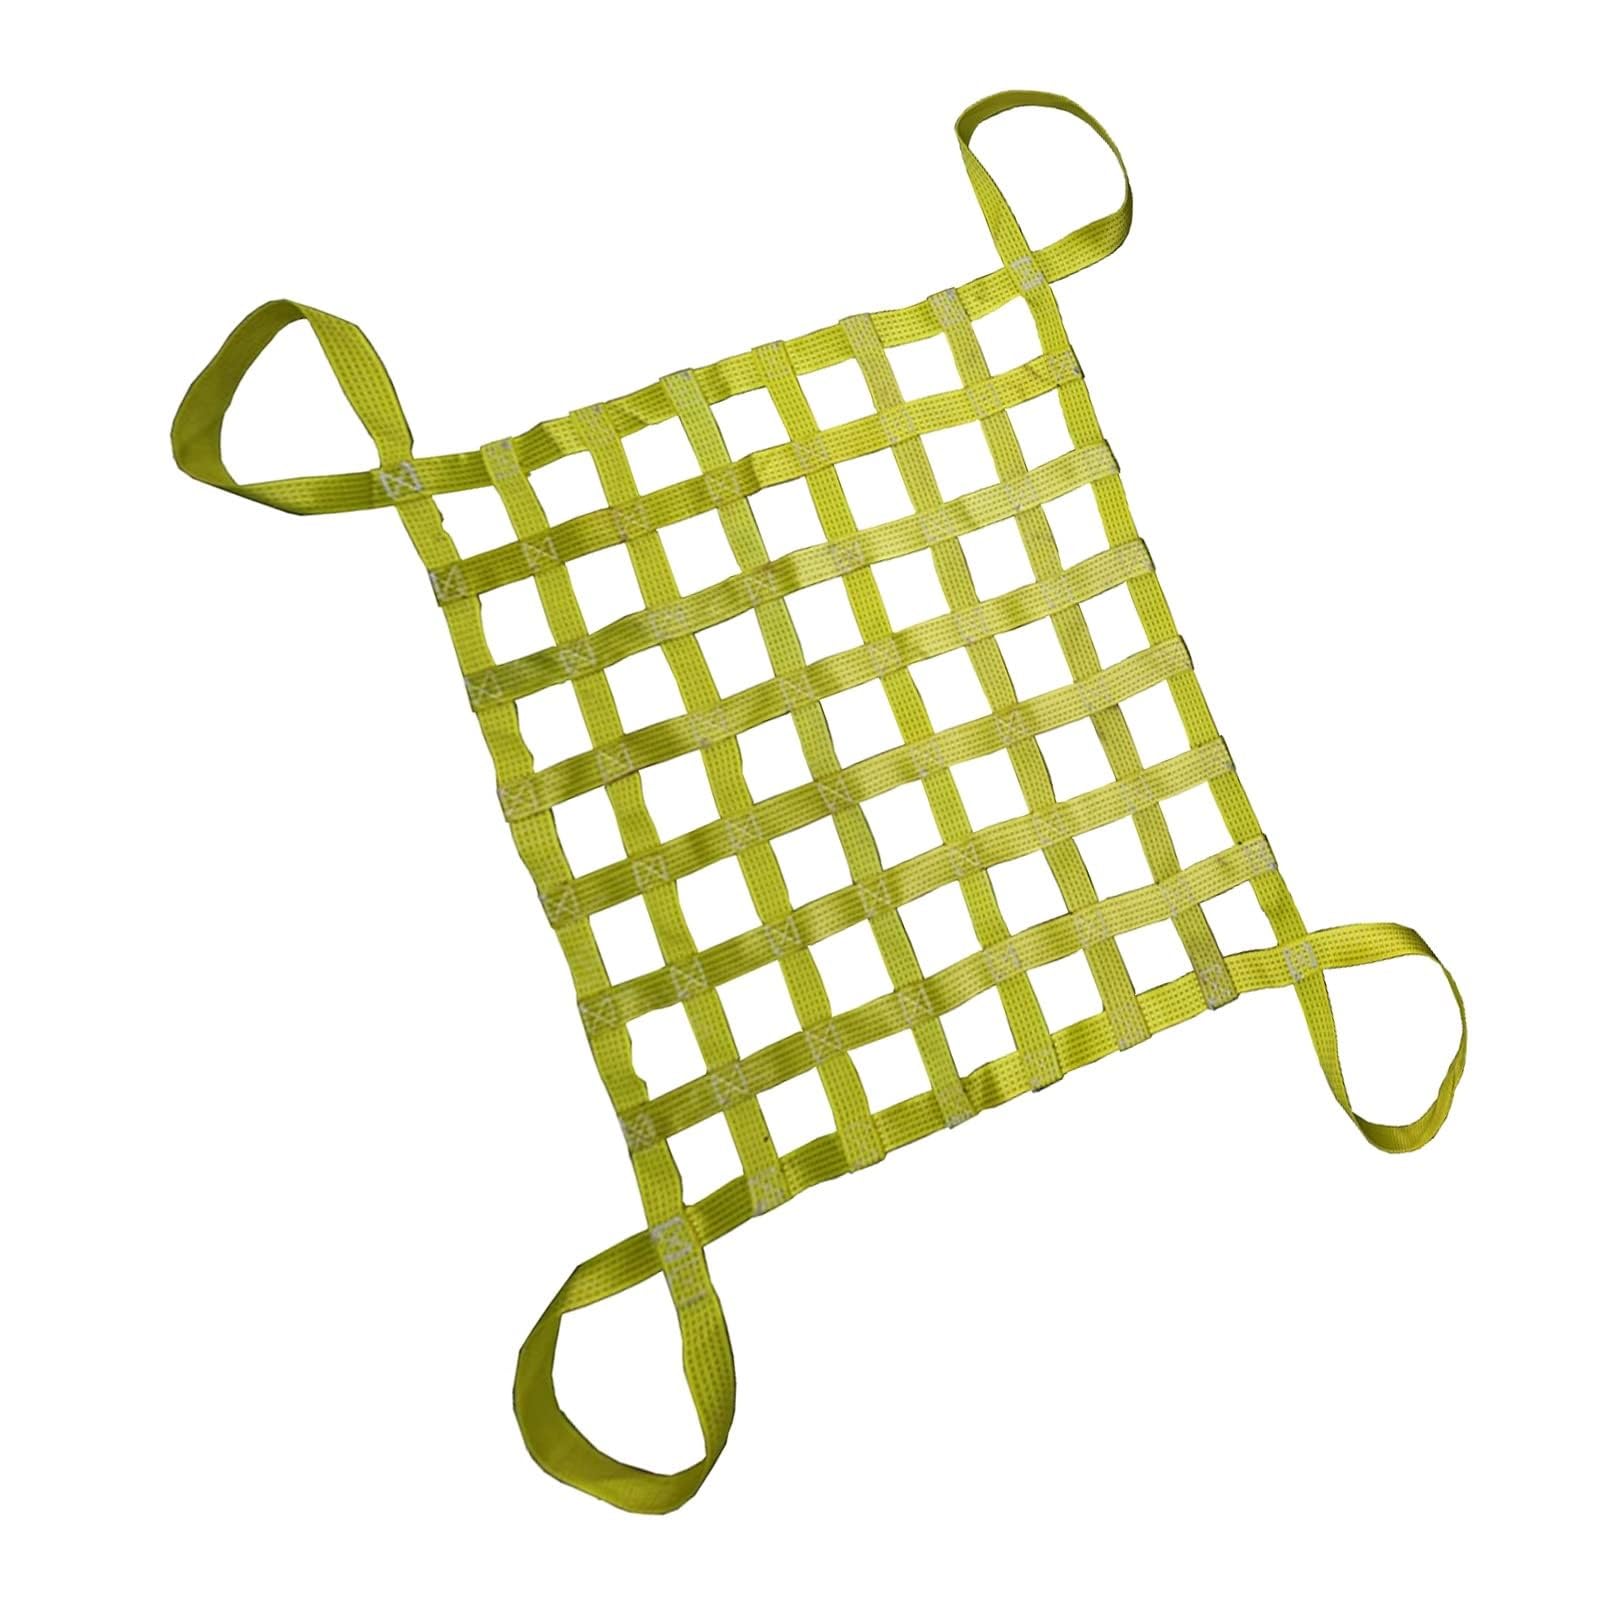 Cargo Hebenetz – Polyester Cargo Hanging Net, Sling Net, Load 0.3-3.5T Lifting Bag, Be- und Entladen Garten Hebenetz Gurte Handling Straps, Outdoor Klettern Sicherheitsnetz (One Color 3 X 3M/Me von WYRMB